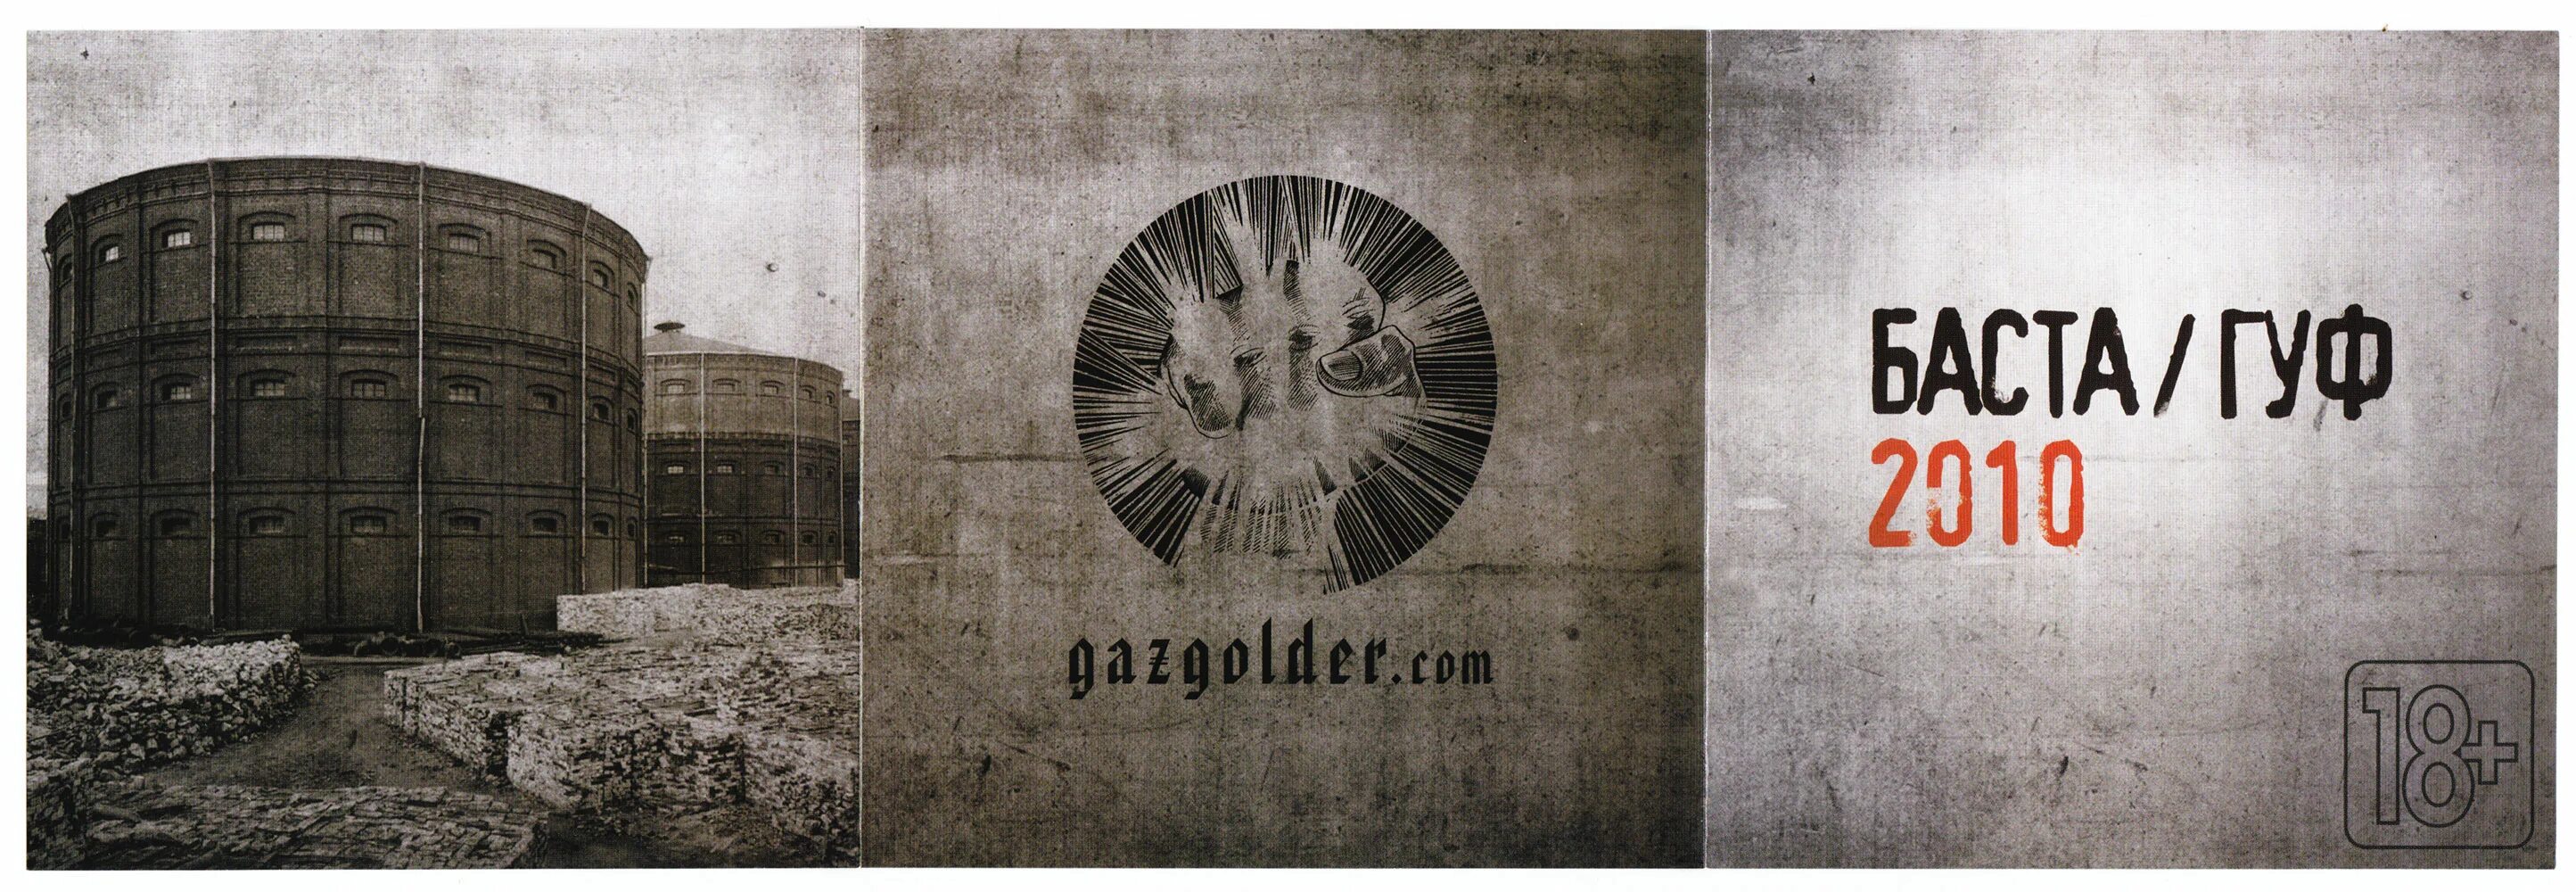 Газгольдер баста. Баста Гуф обложка альбома. Баста Гуф 2010. Баста и Гуф. Газгольдер лейбл.